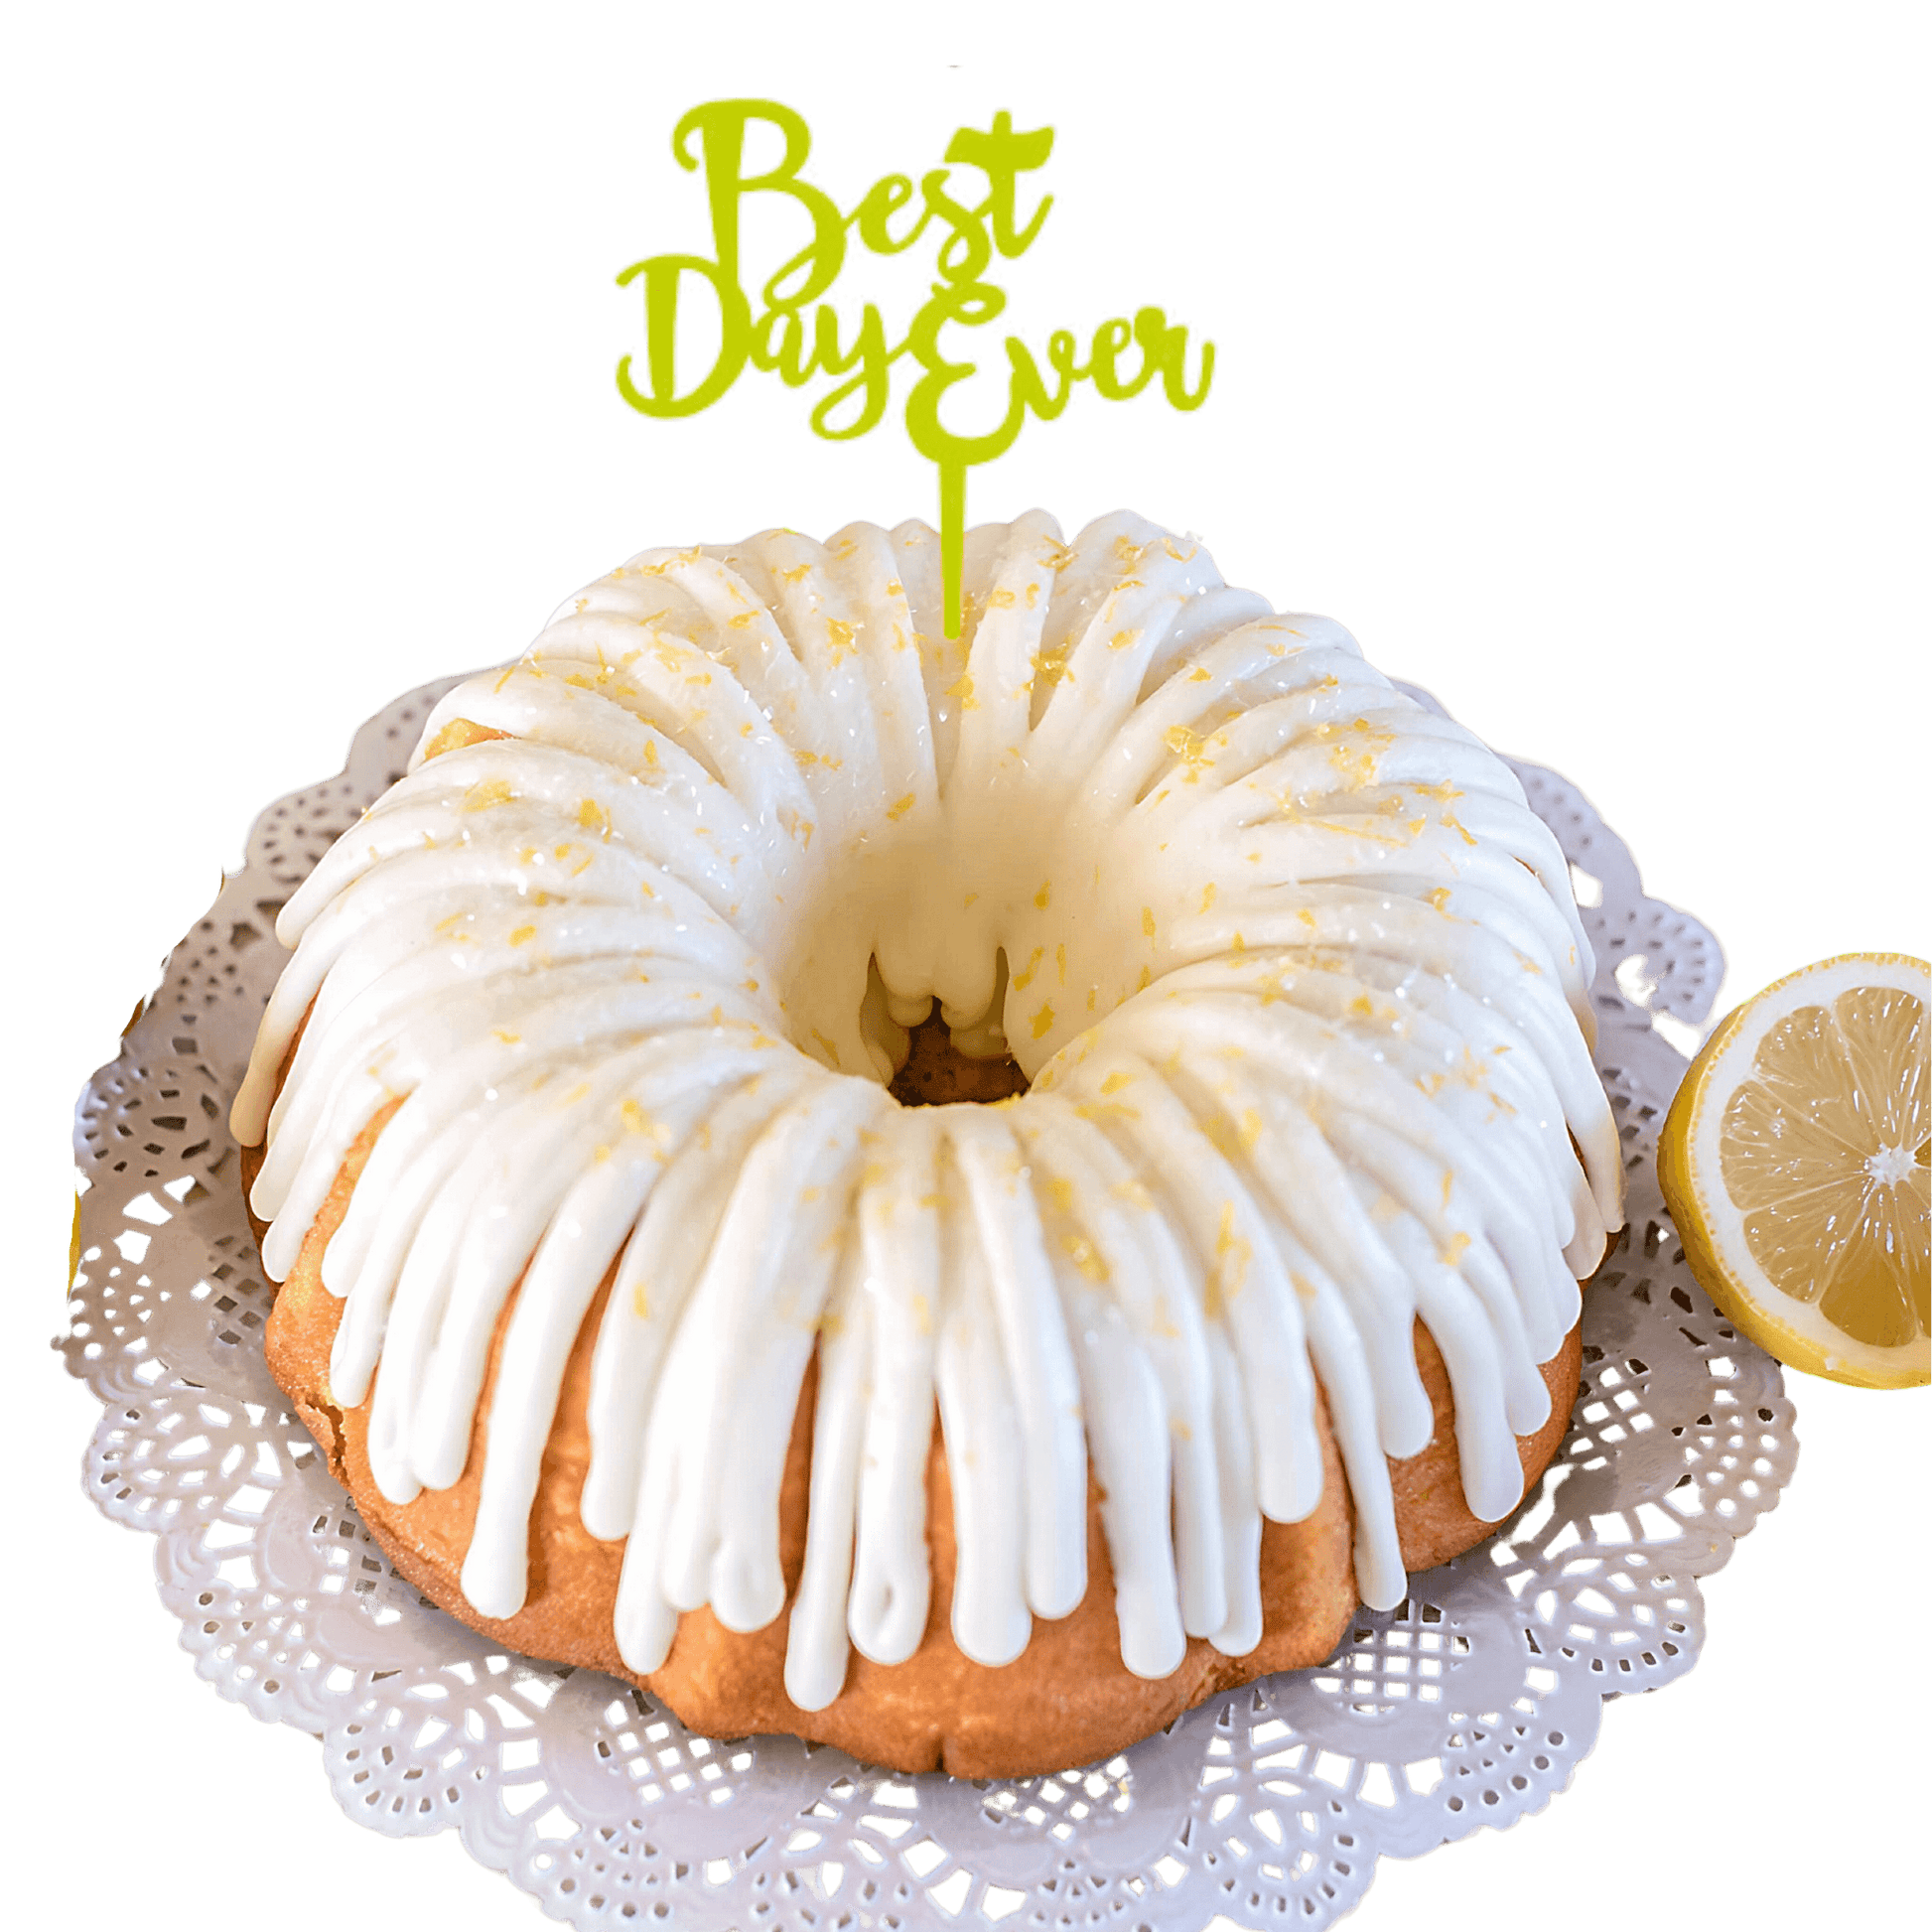 Lemon Squeeze Lime "BEST DAY EVER" Candle Holder Bundt Cake - Bundt Cakes